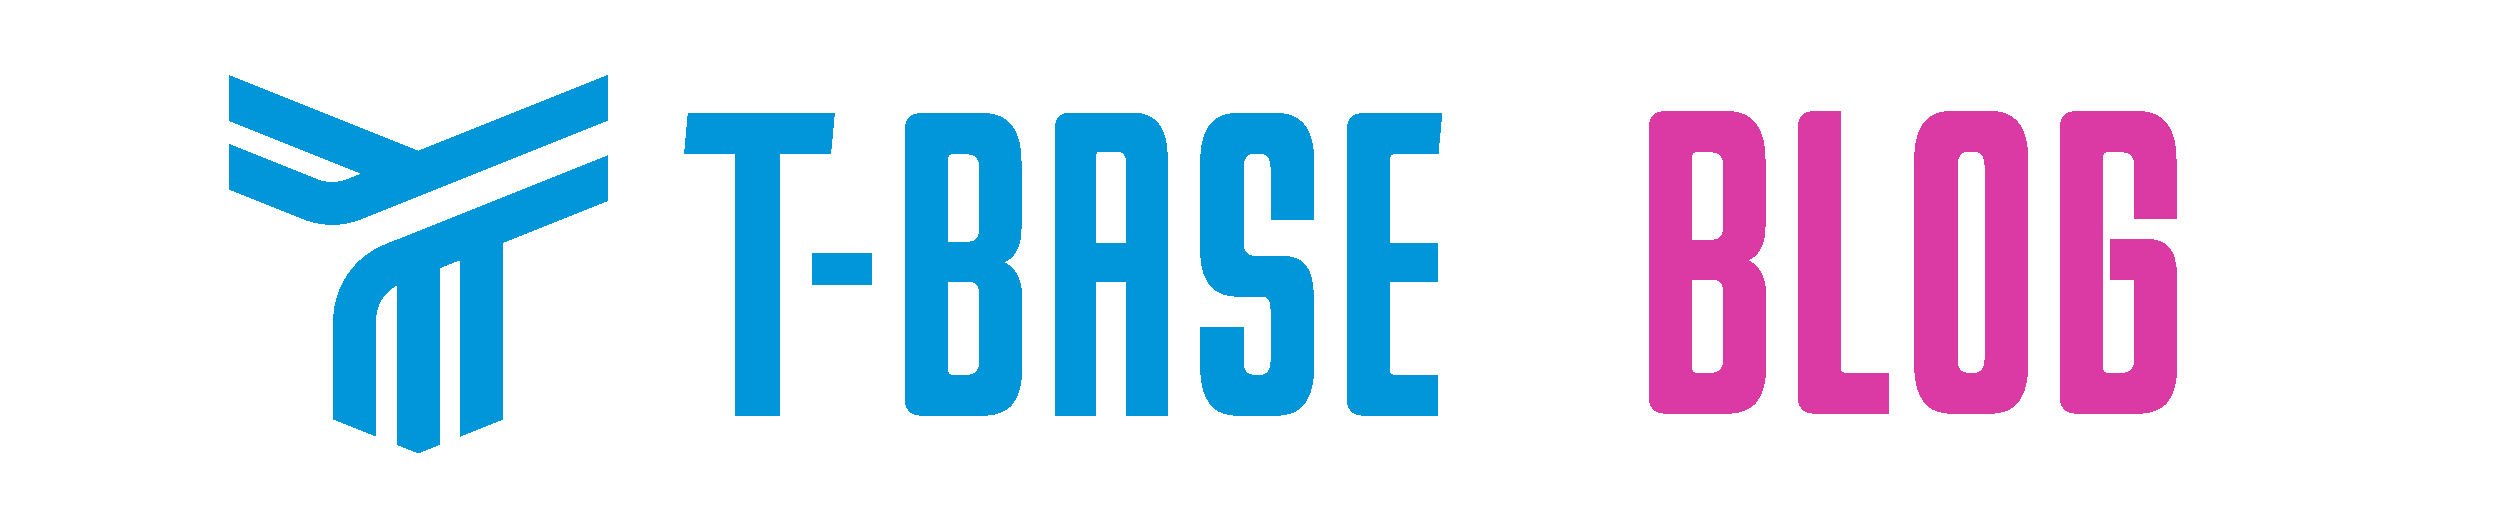 T-Base blog